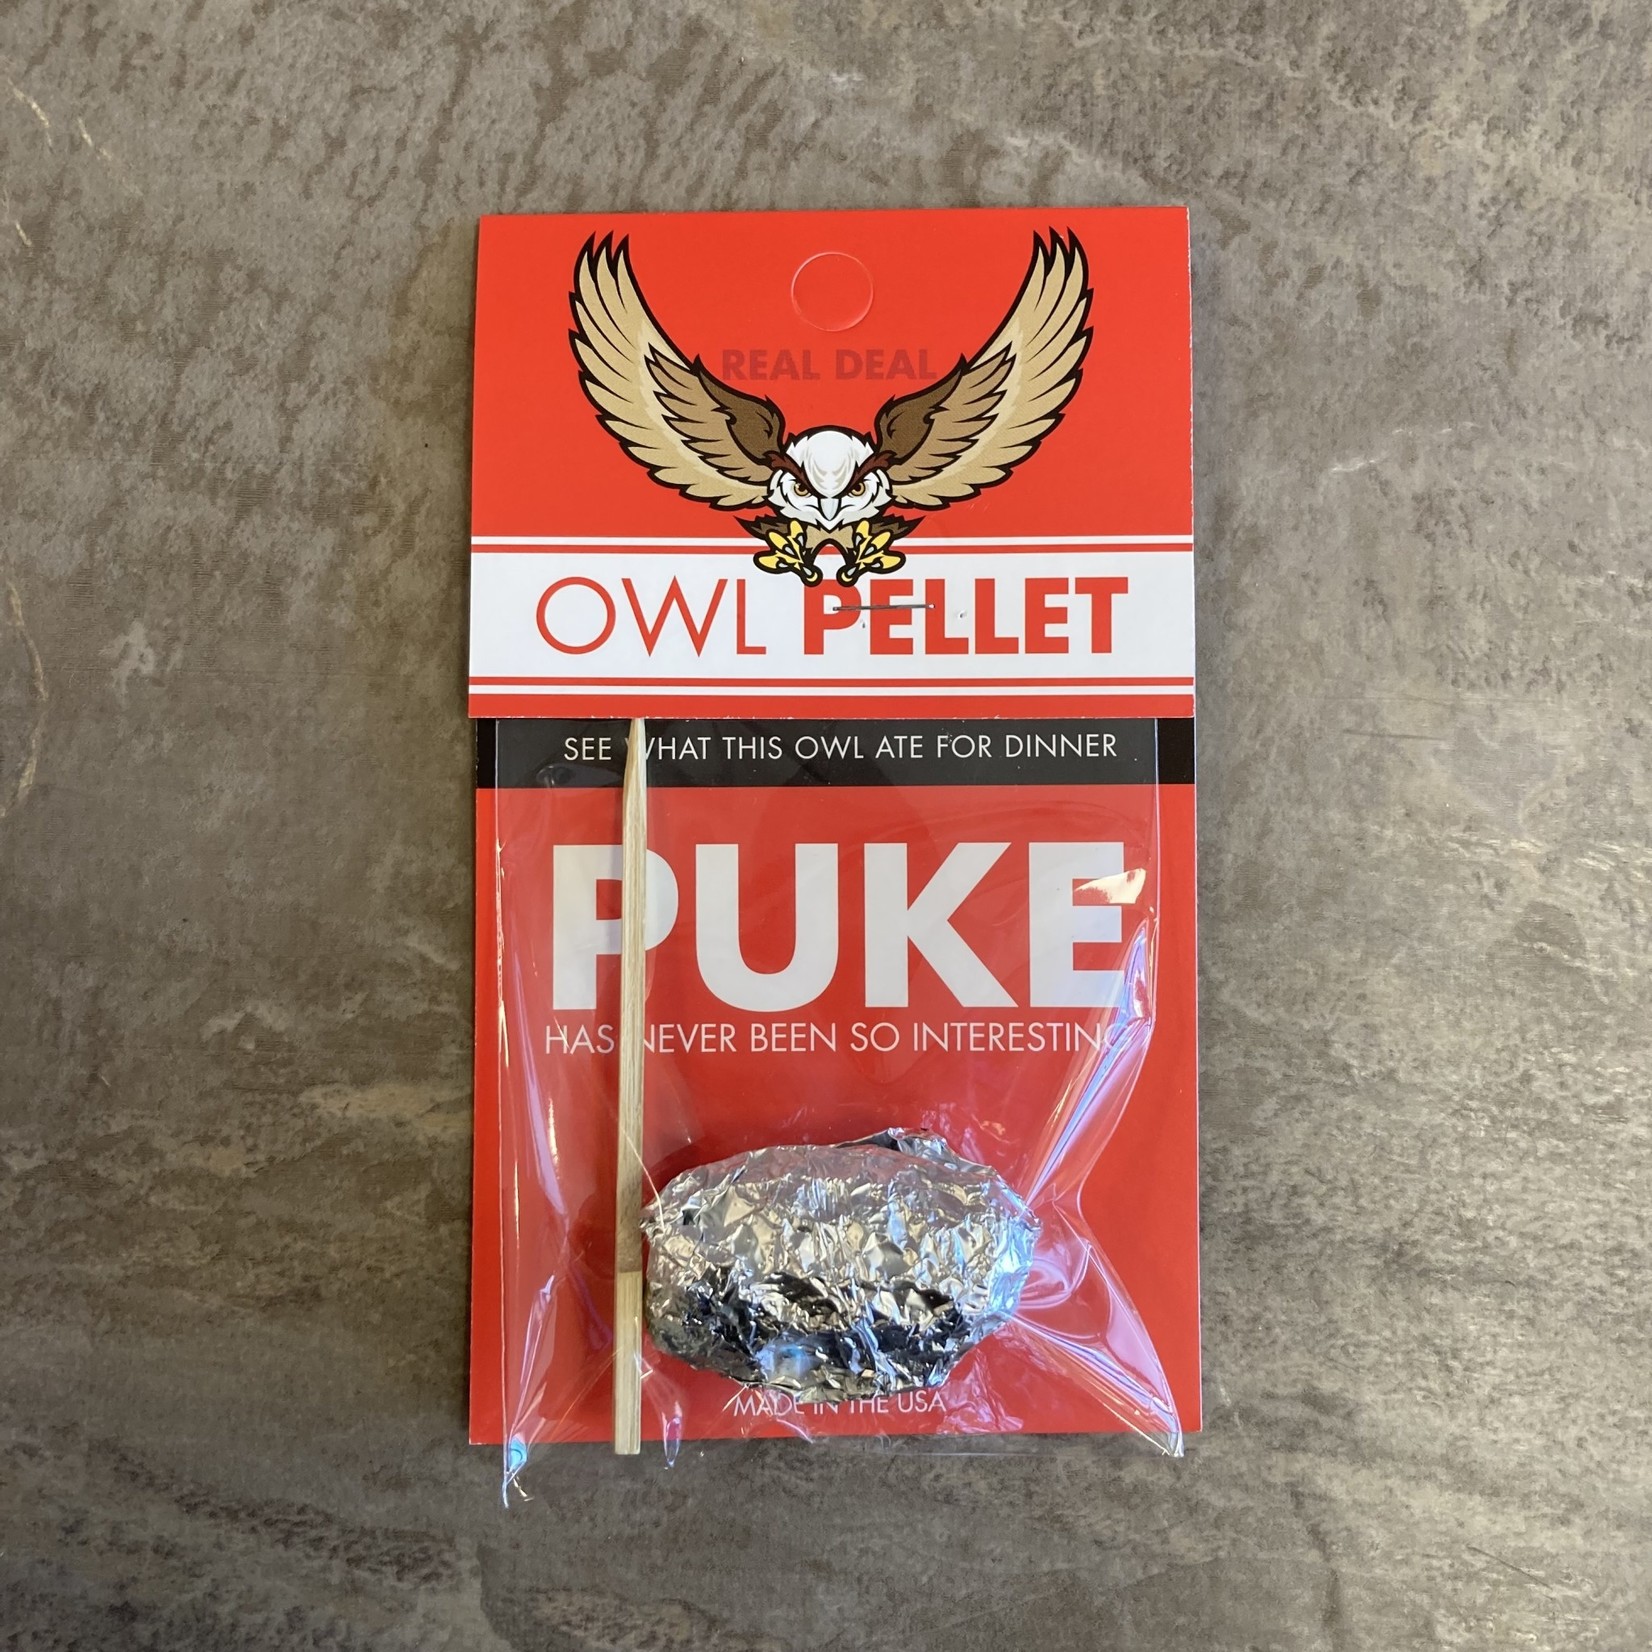 Single Owl Pellet Puke Dissection Kit